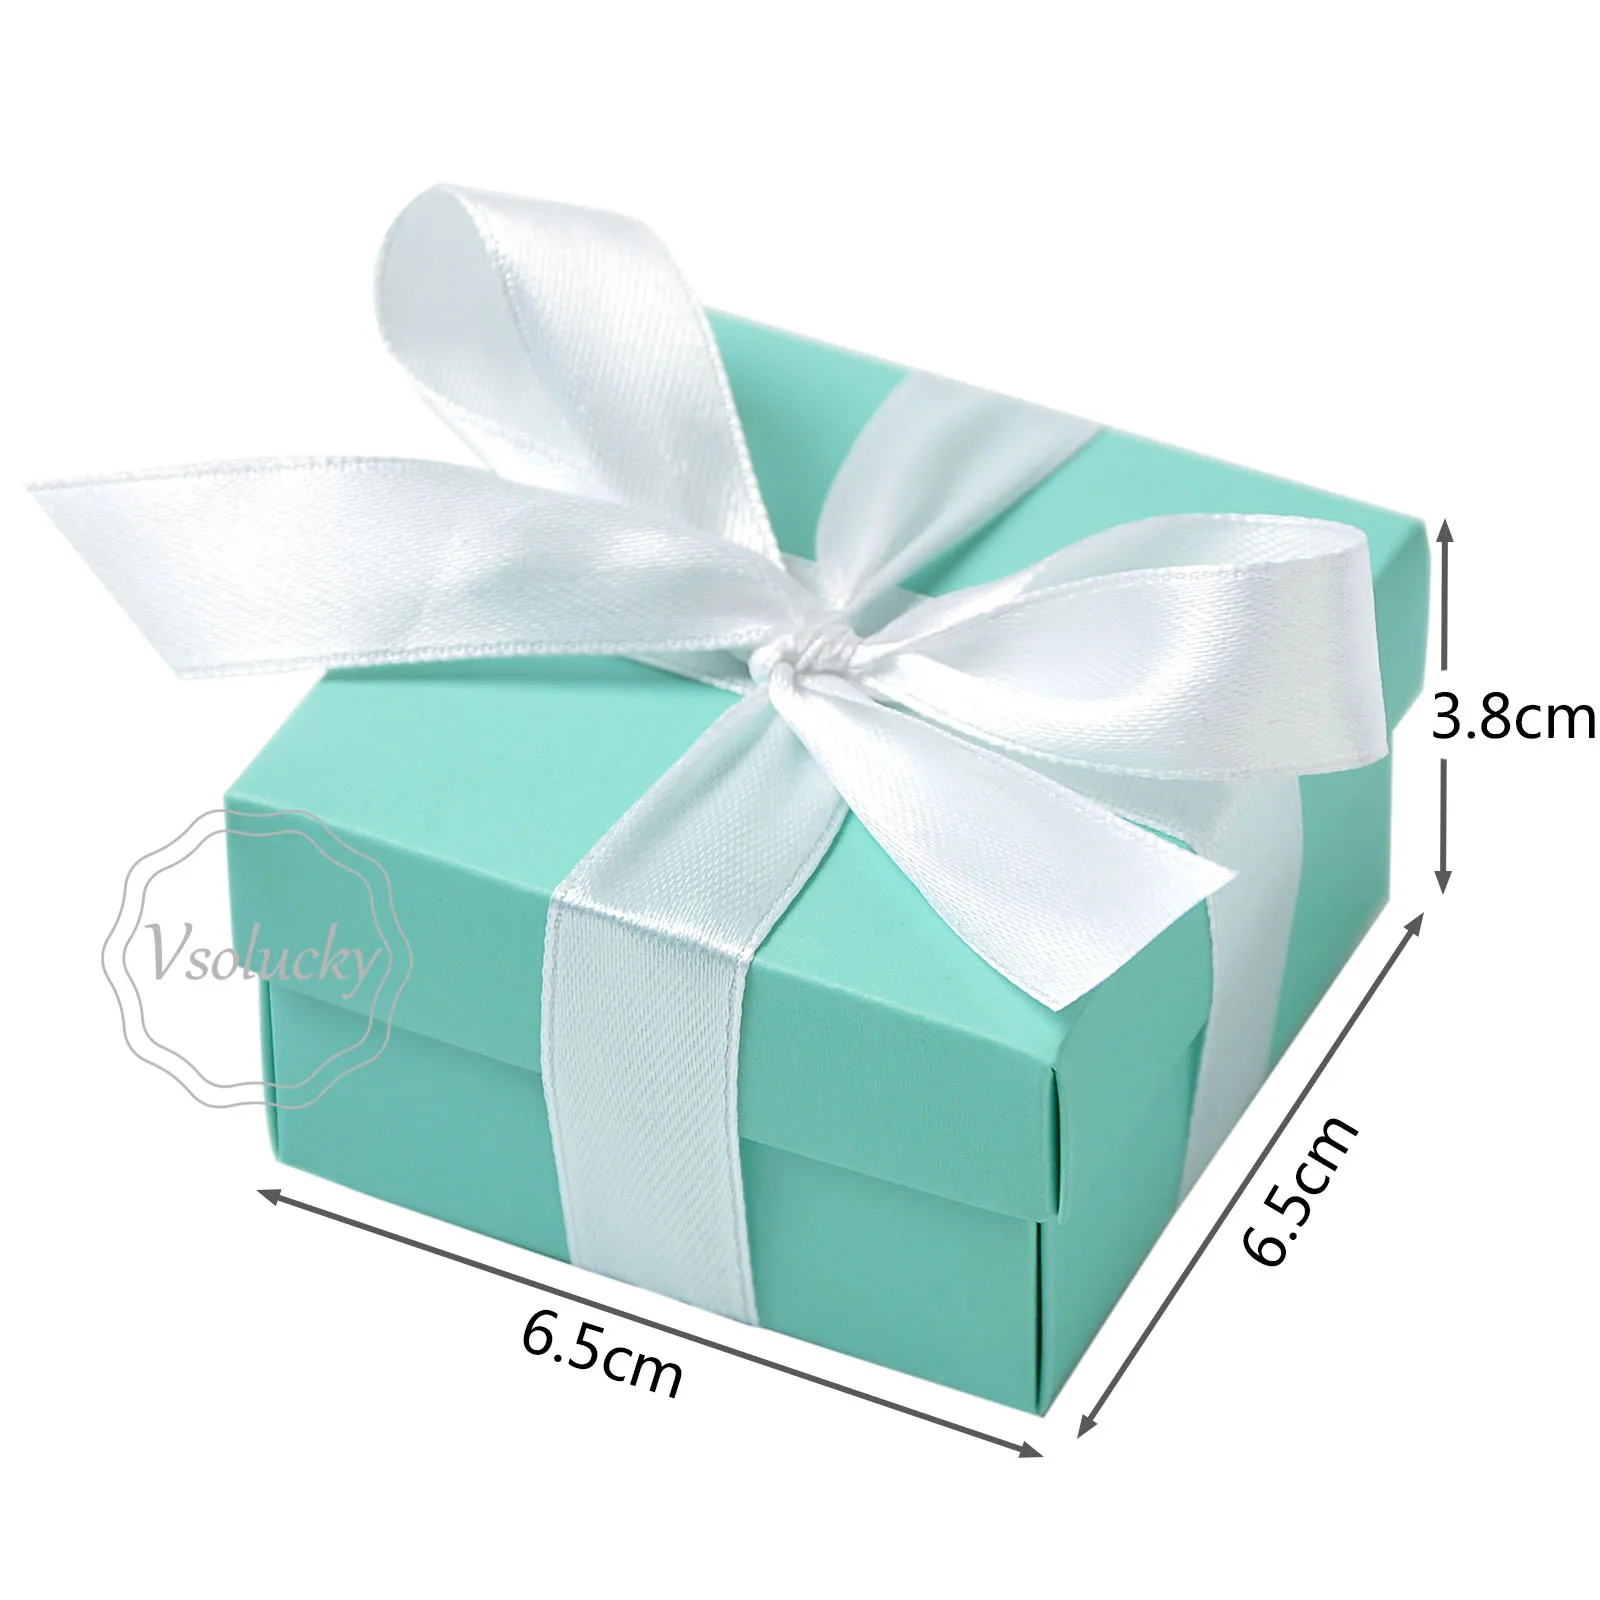 50 шт./лот коробки конфет подарки поле, Зеленая мята бумага подарочная сумка с шелковой лентой для свадебной украшения партия событие поставки